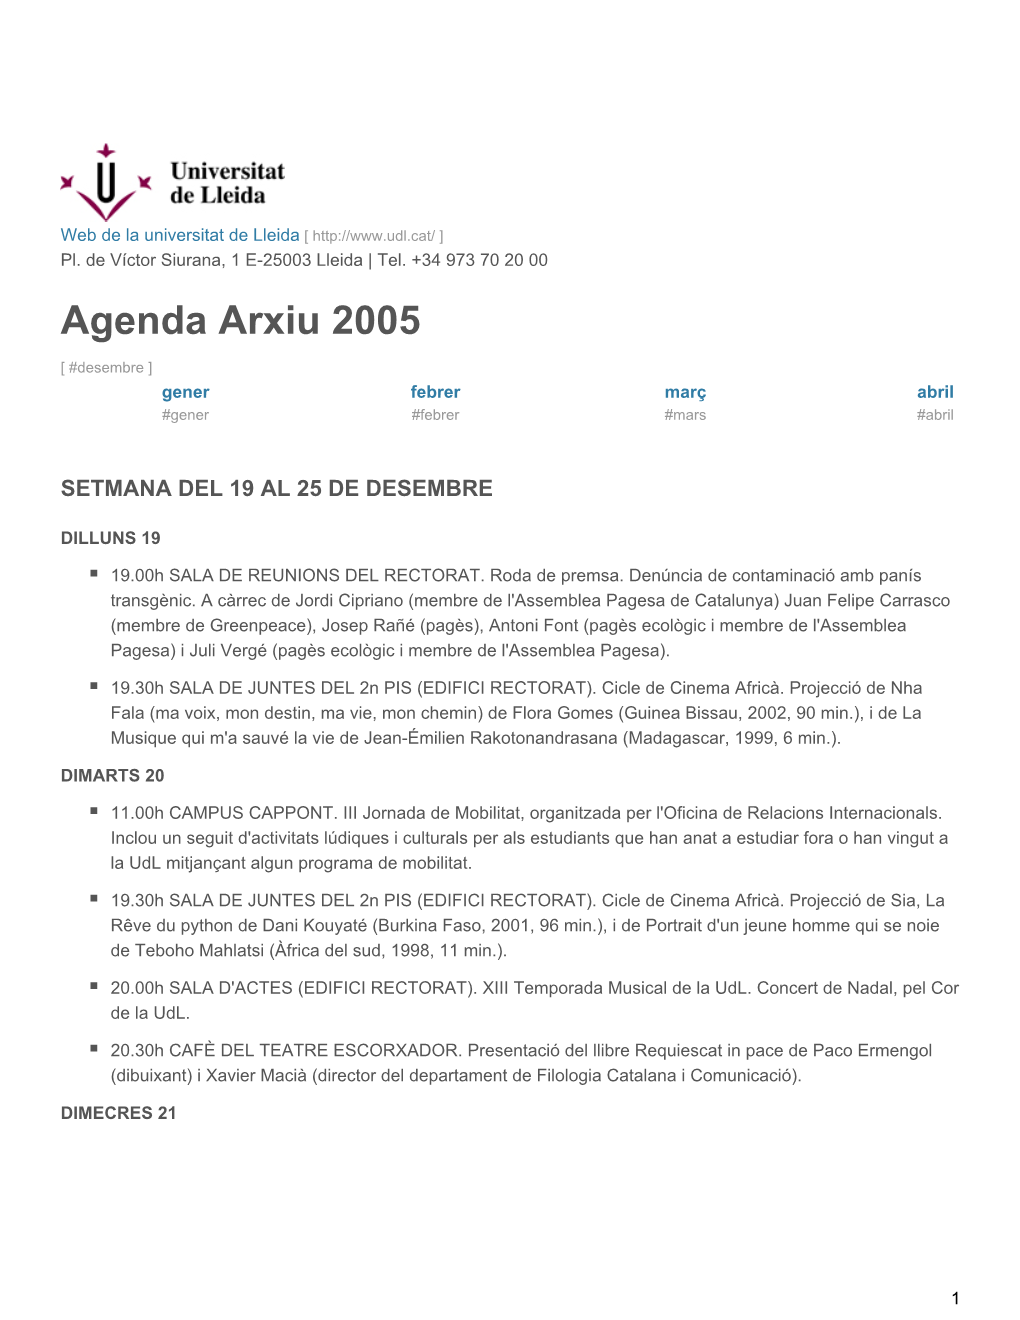 Agenda Arxiu 2005